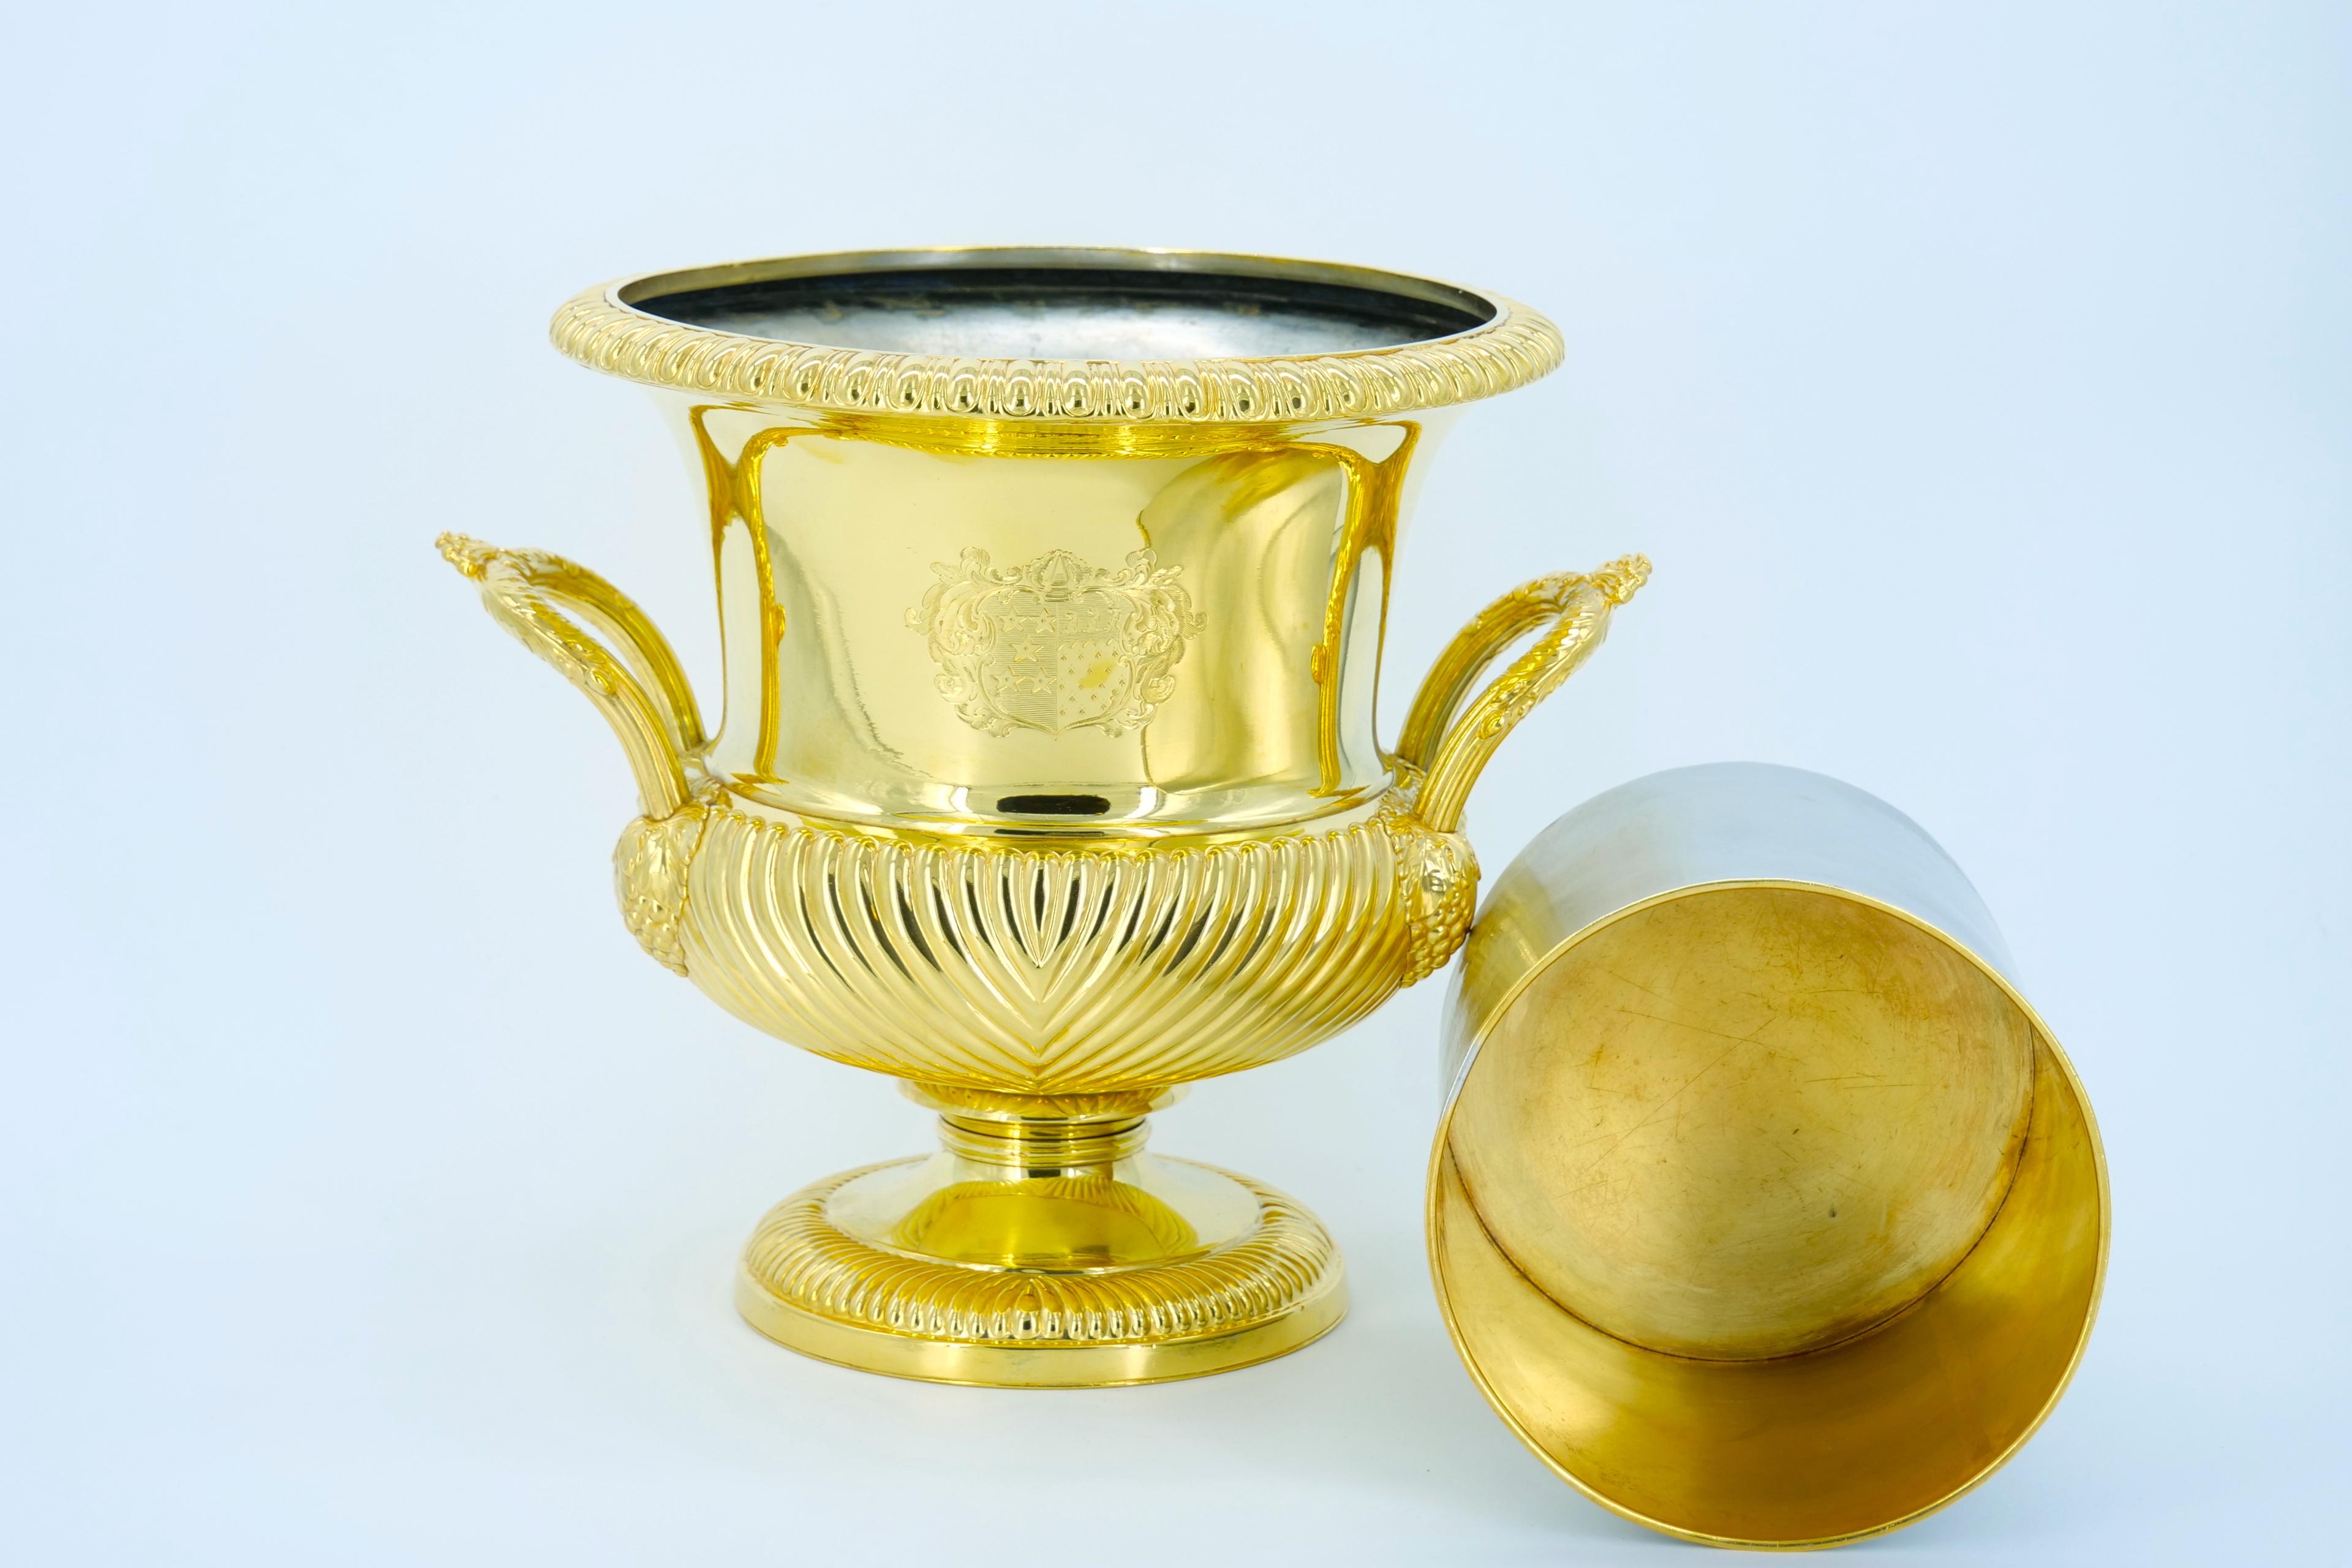 Seau à glace en métal argenté lavé à l'or, en forme de vase campanaire de l'époque victorienne anglaise, avec des poignées à feuillage, des godrons à la base et à la taille, et un bord décoré d'un motif en forme d'œuf et de fléchettes. Avec la